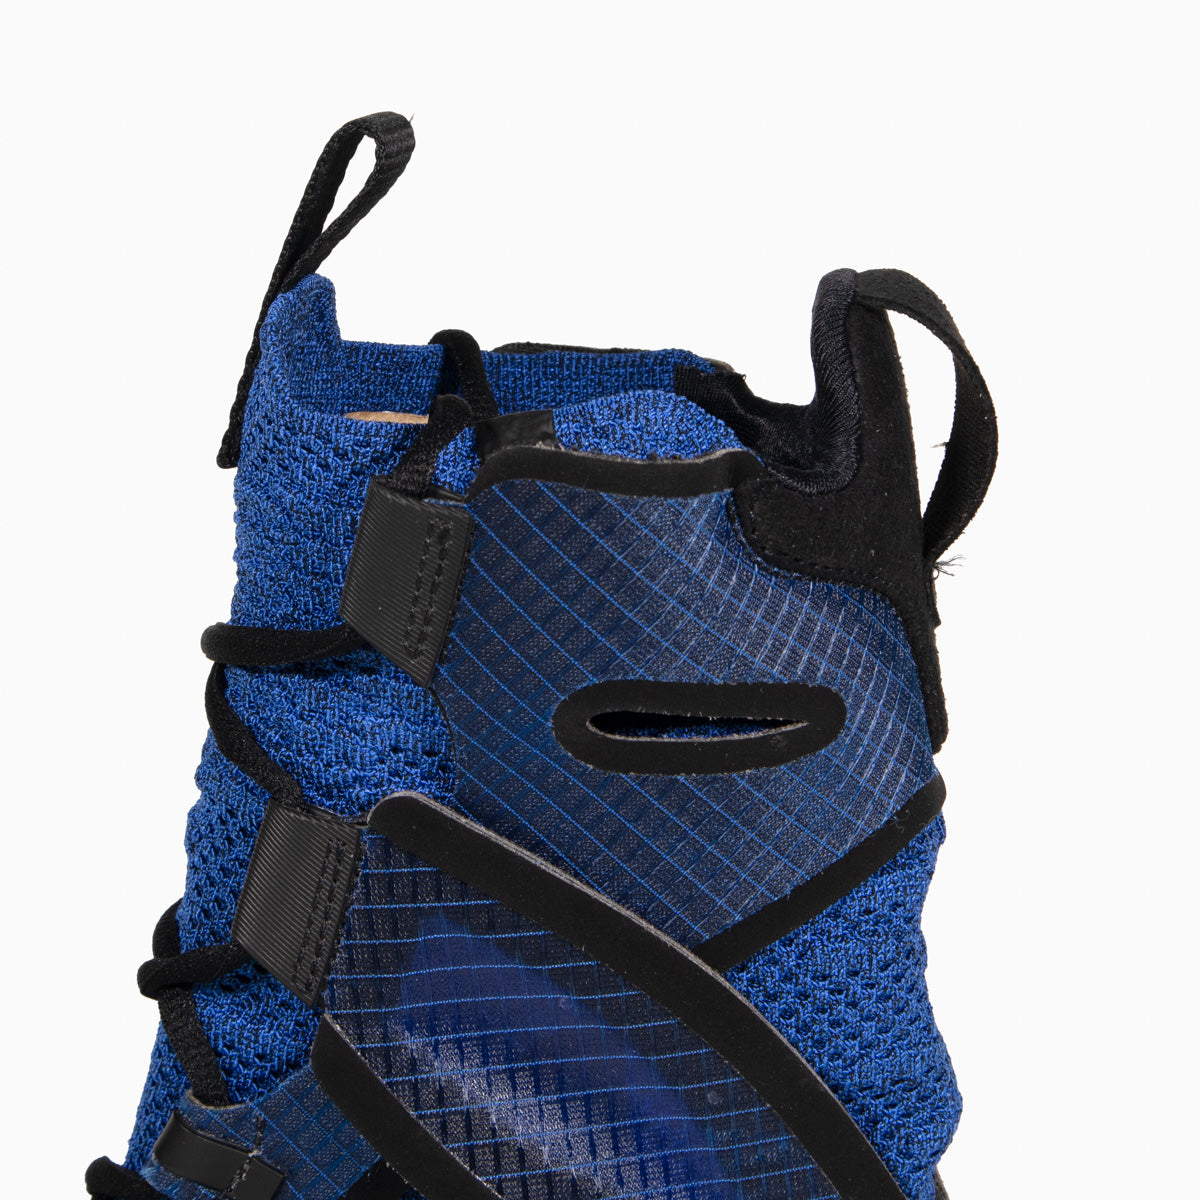 Boxschuhe Nike Hyperko 2.0 Blau